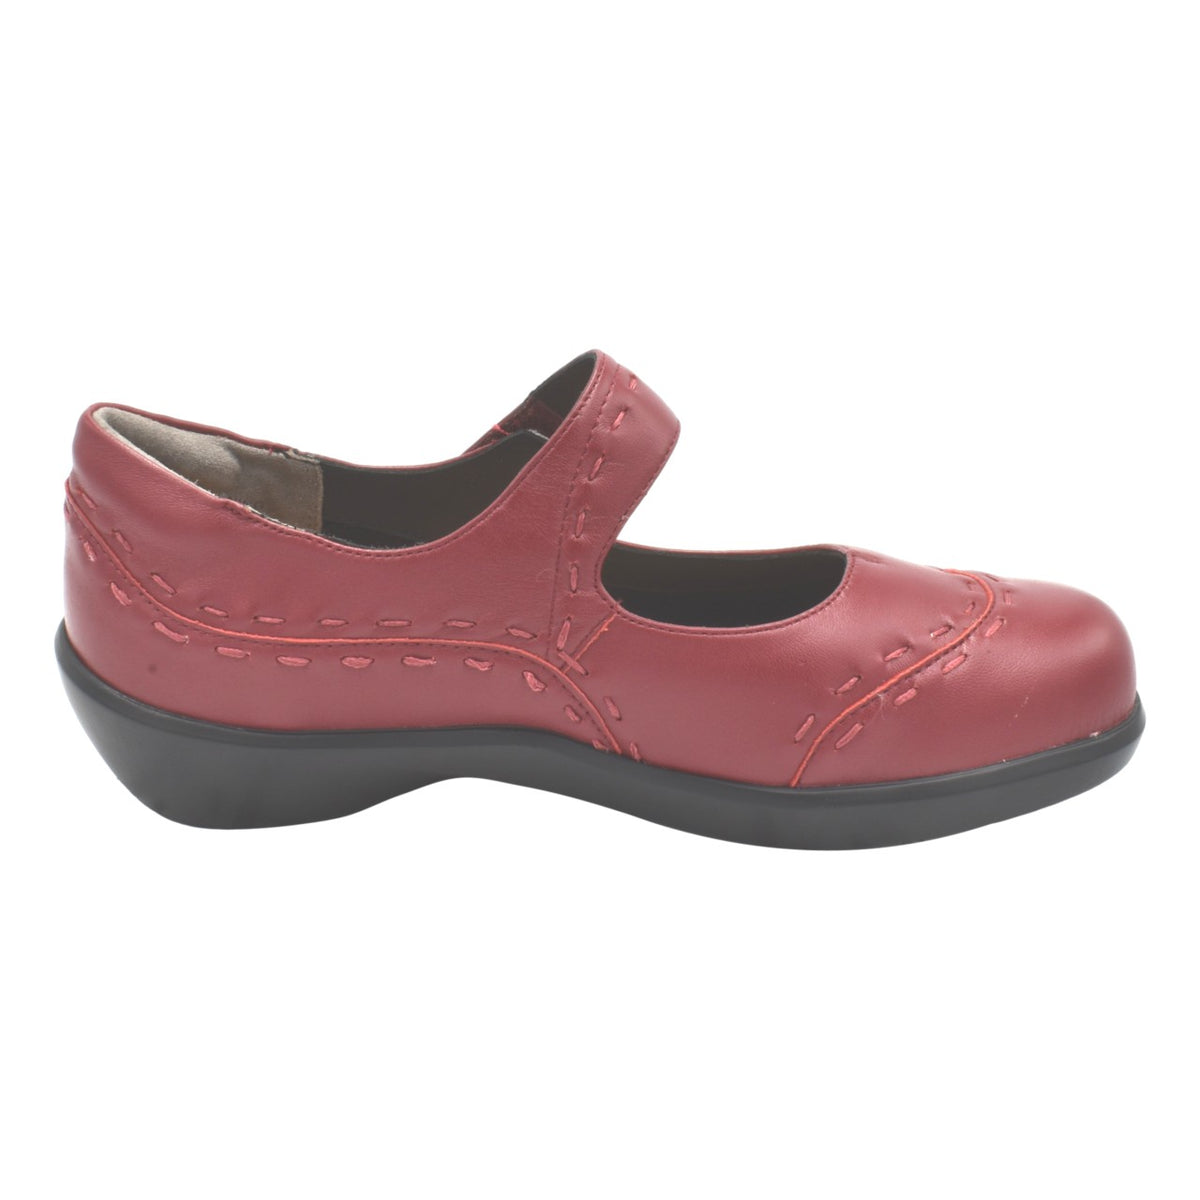 Ziera Gummibear – Just Comfort Shoes